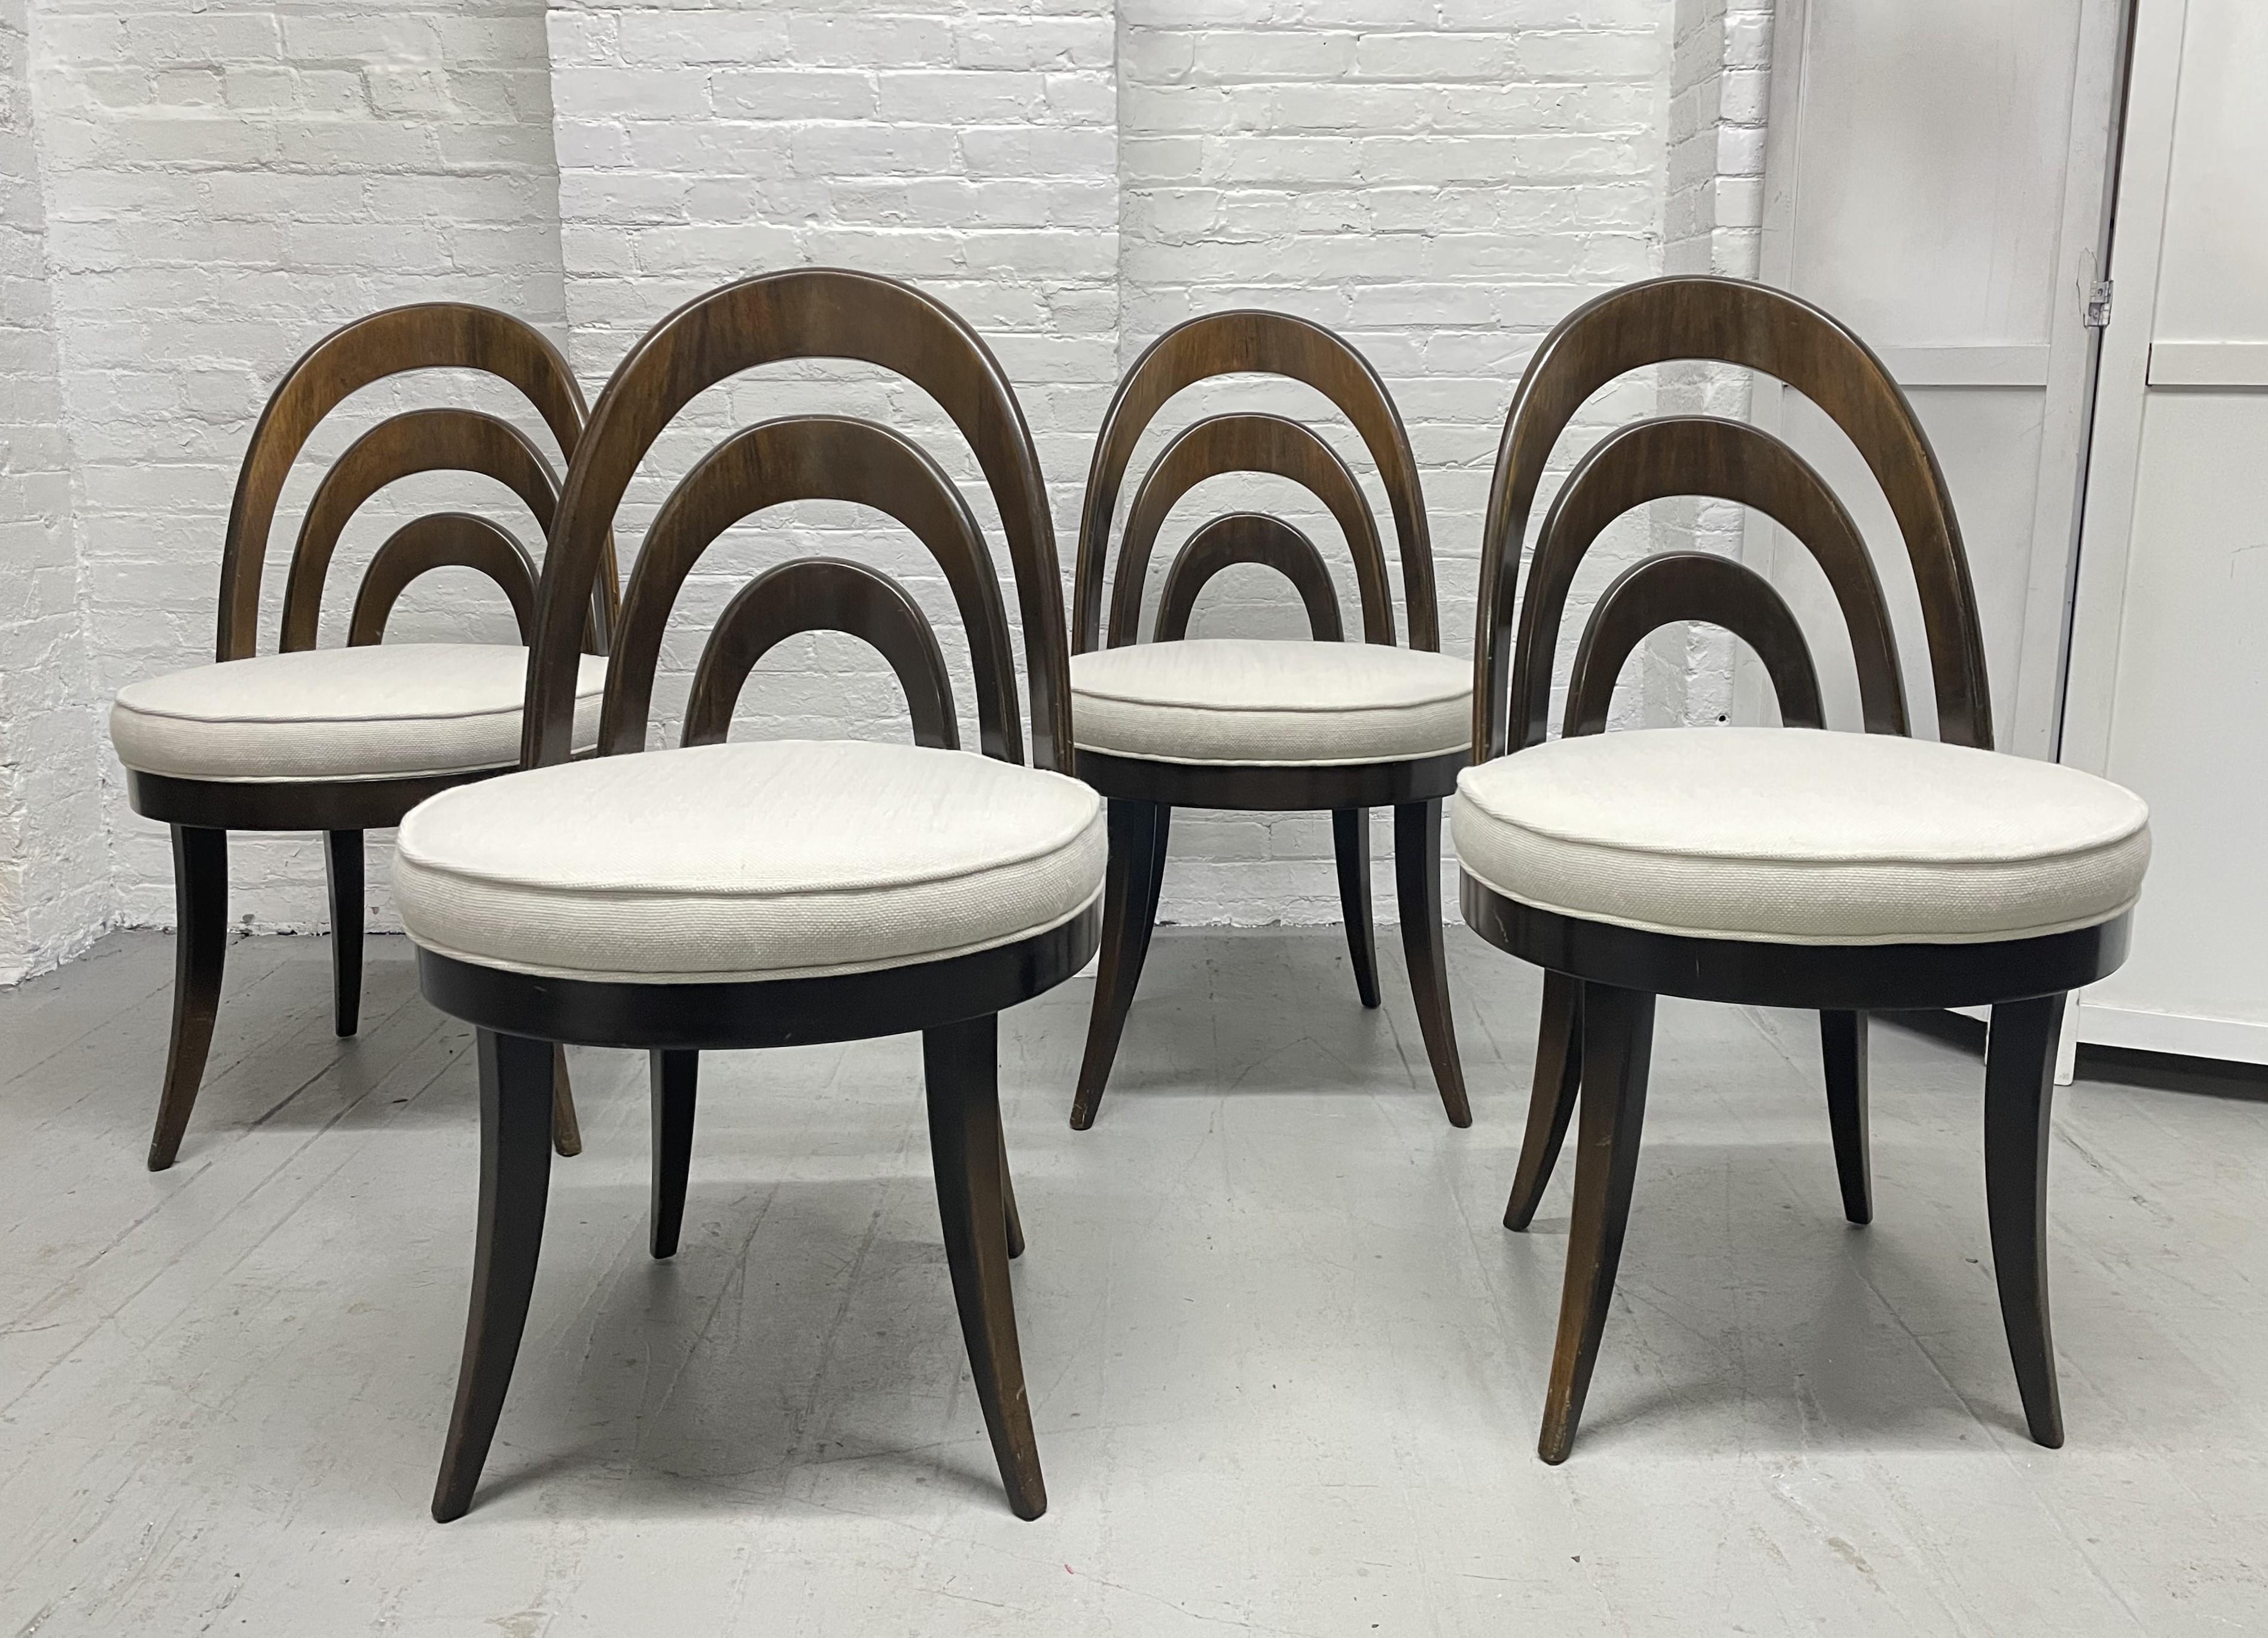 Harvey Probber Esszimmerstühle aus den 1950er Jahren. Schön gestaltete Stühle mit geschwungener Rückenlehne, gespreizten Beinen und neu stoffbezogenen Sitzpolstern. Mahagoni-Rahmen.